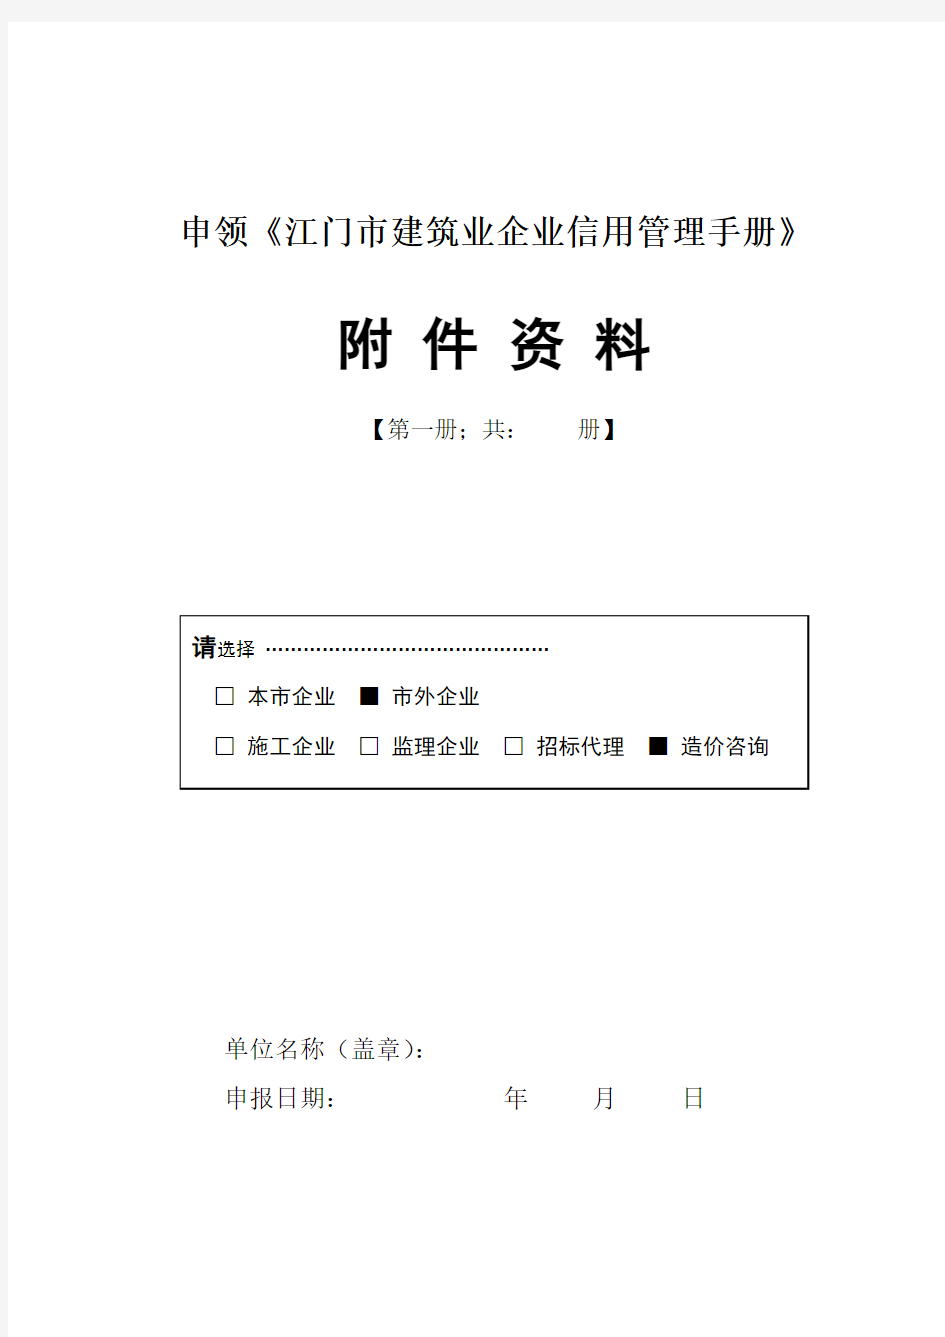 申领《江门市建筑业企业信用管理手册》